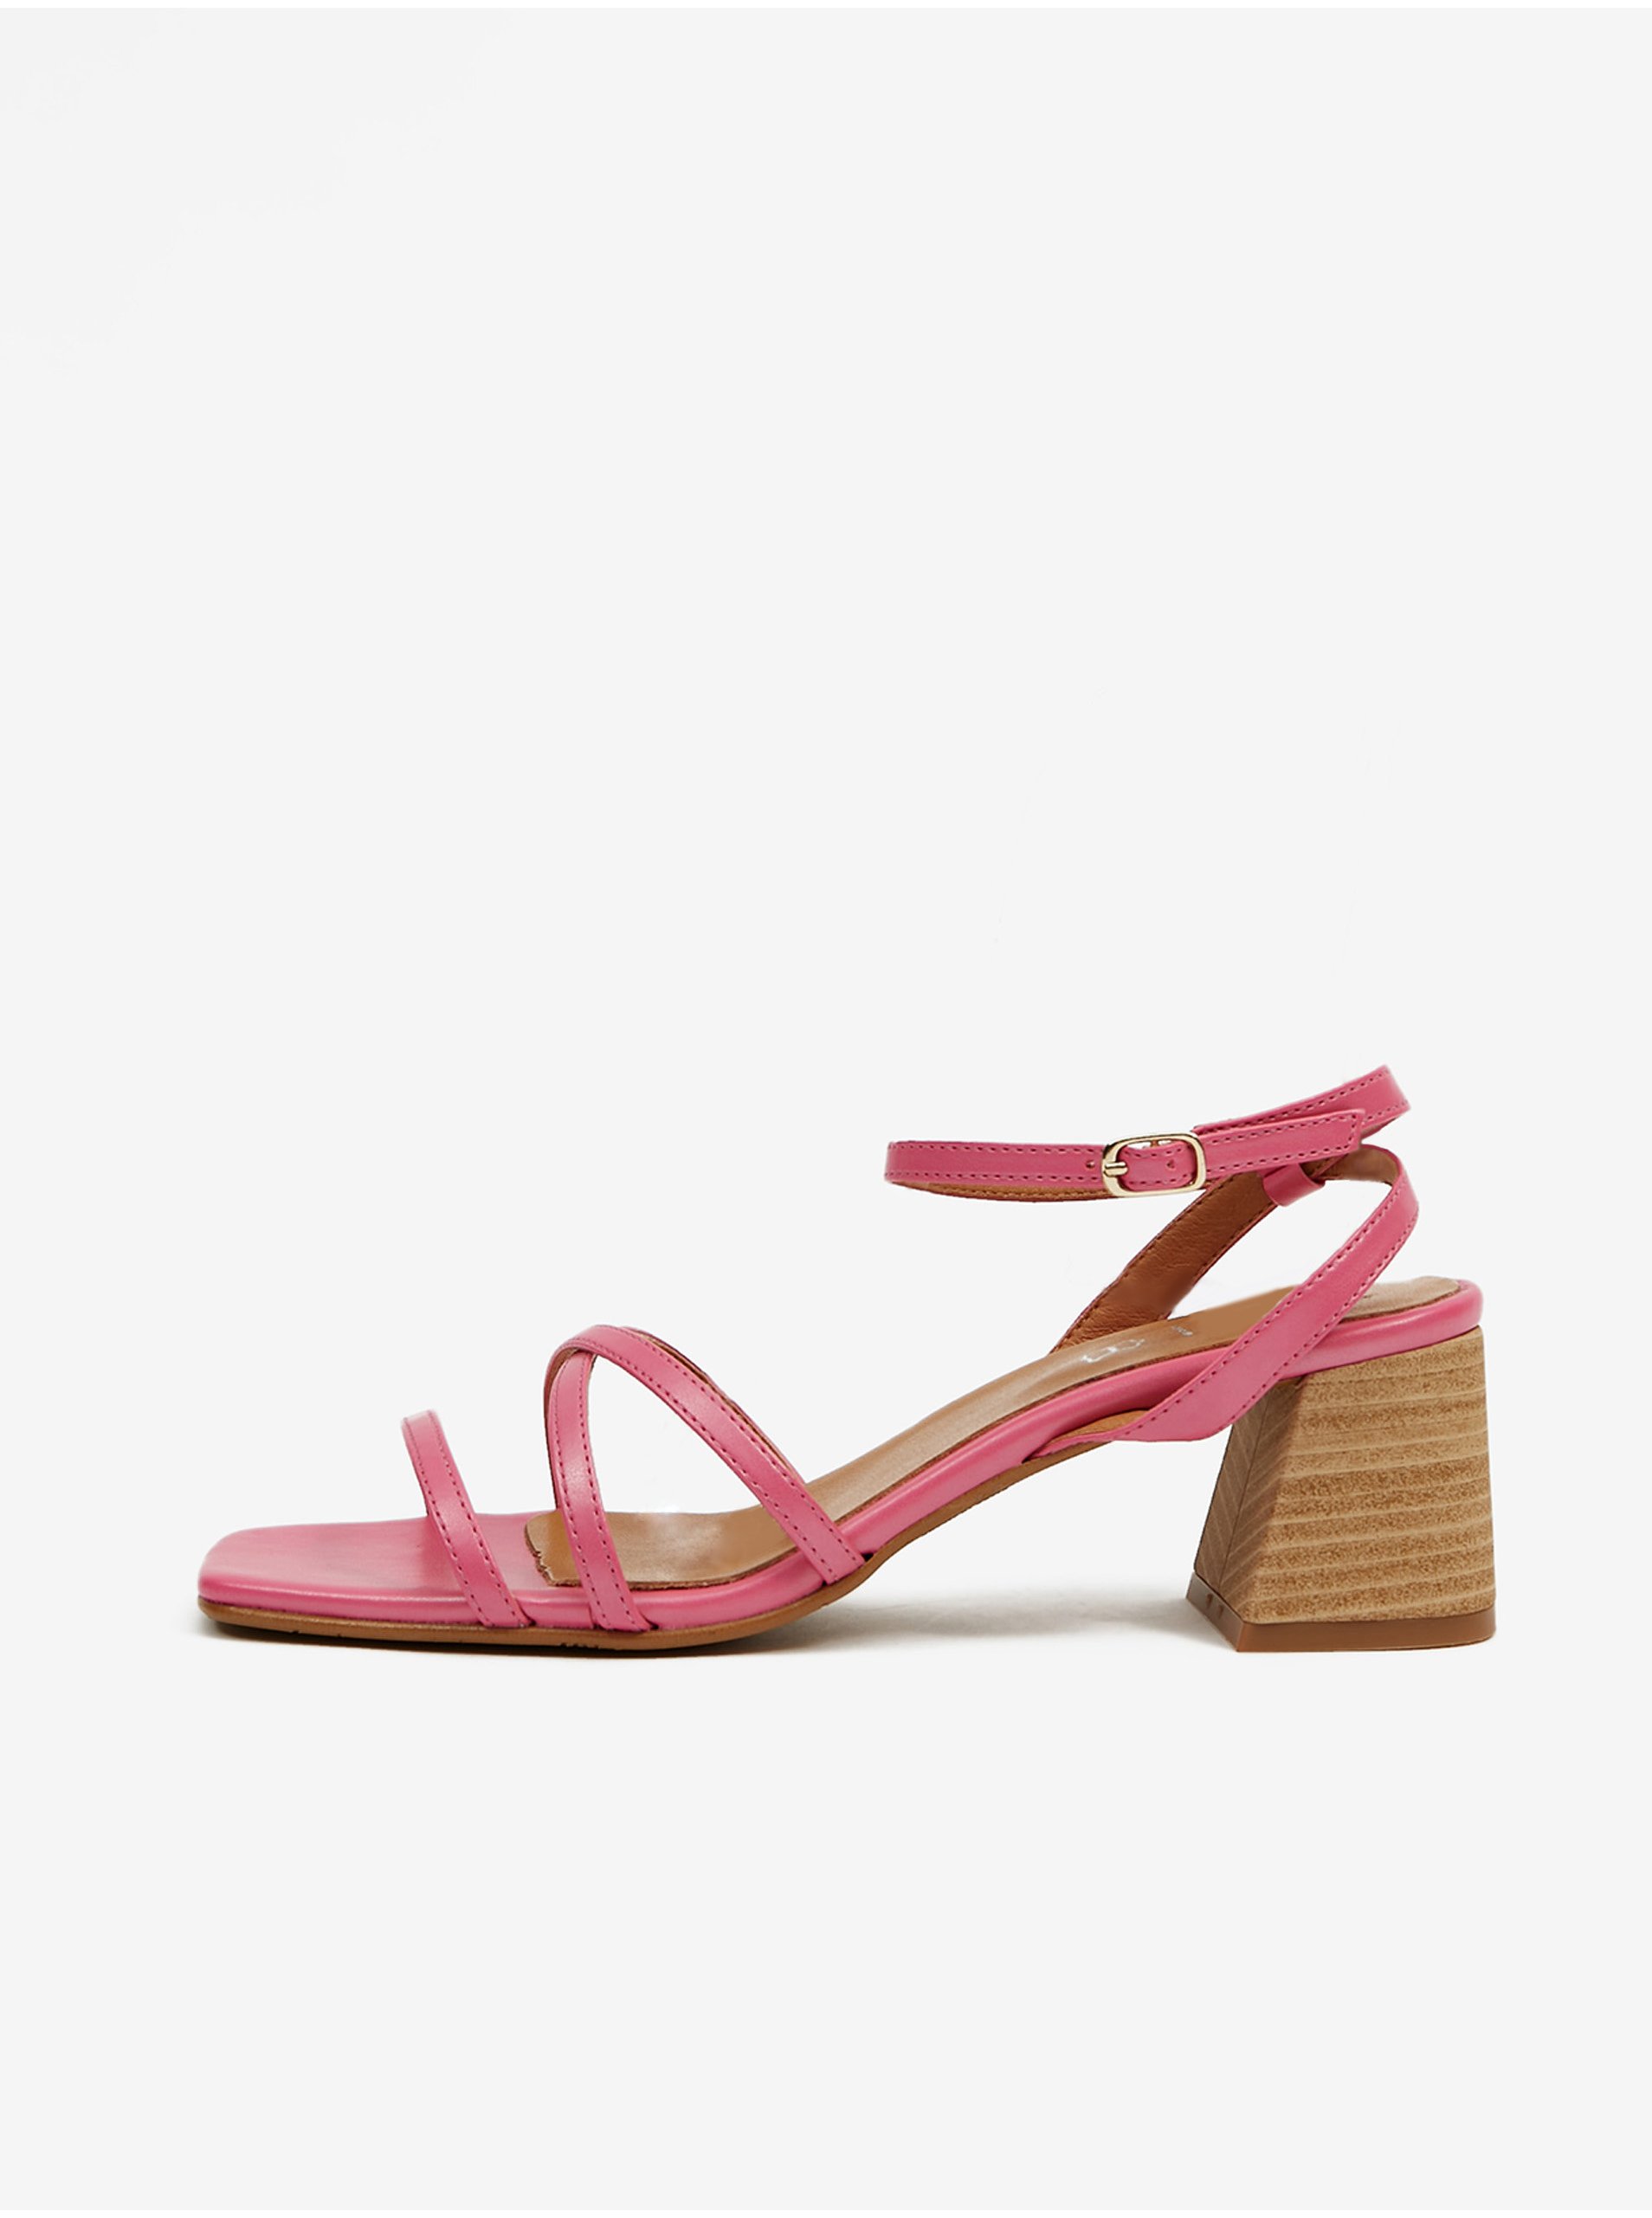 E-shop Růžové dámské sandály na podpatku OJJU